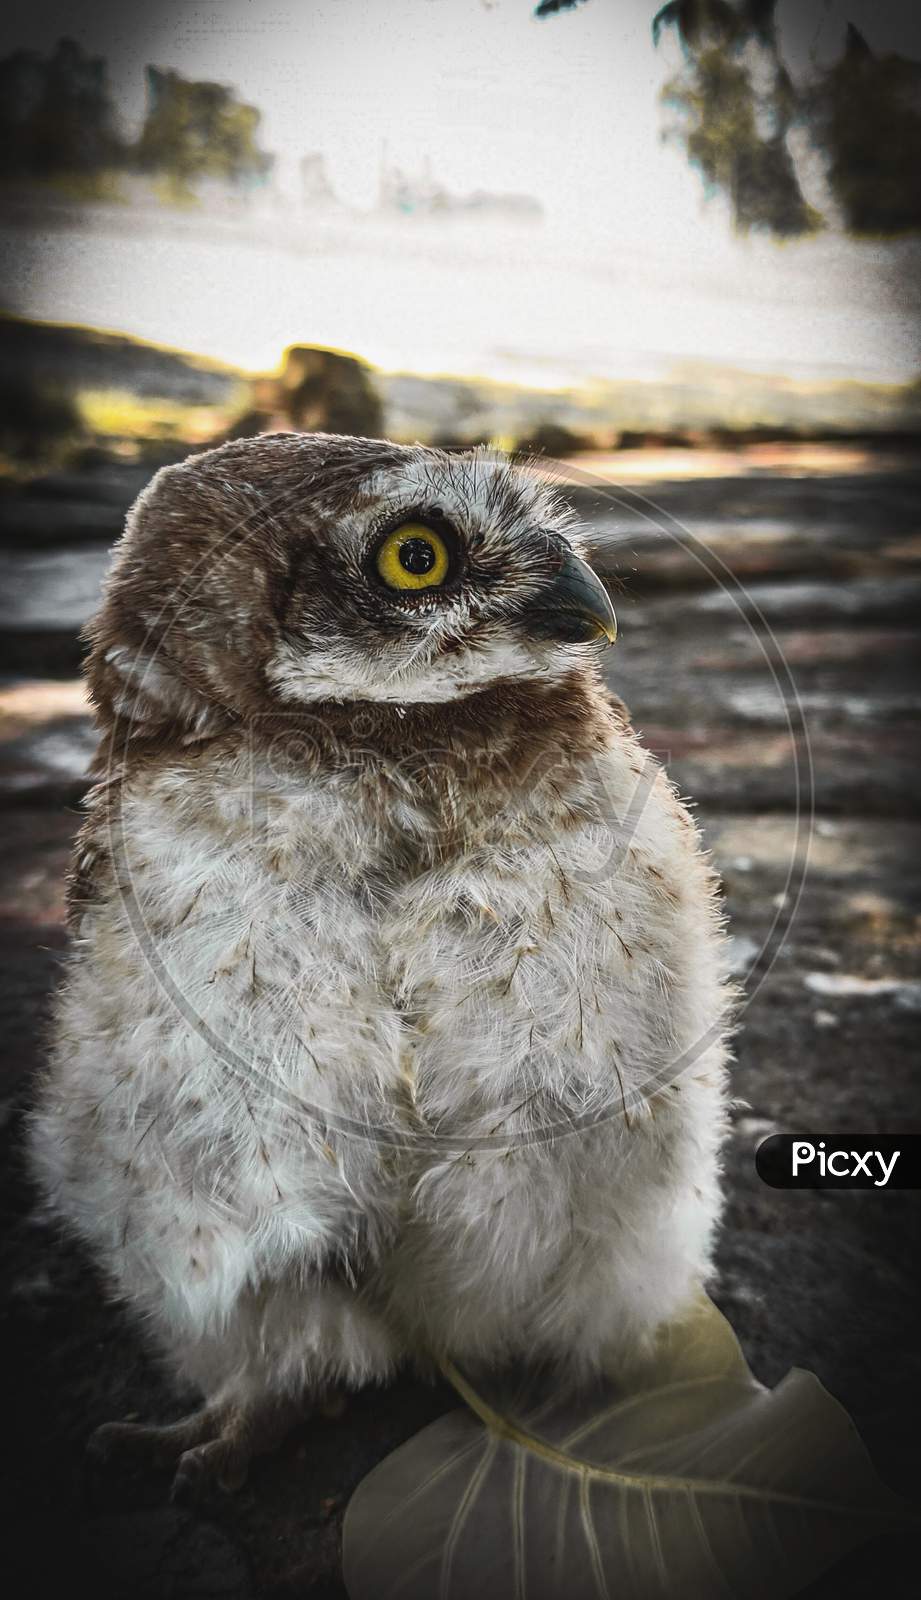 Owl photos.